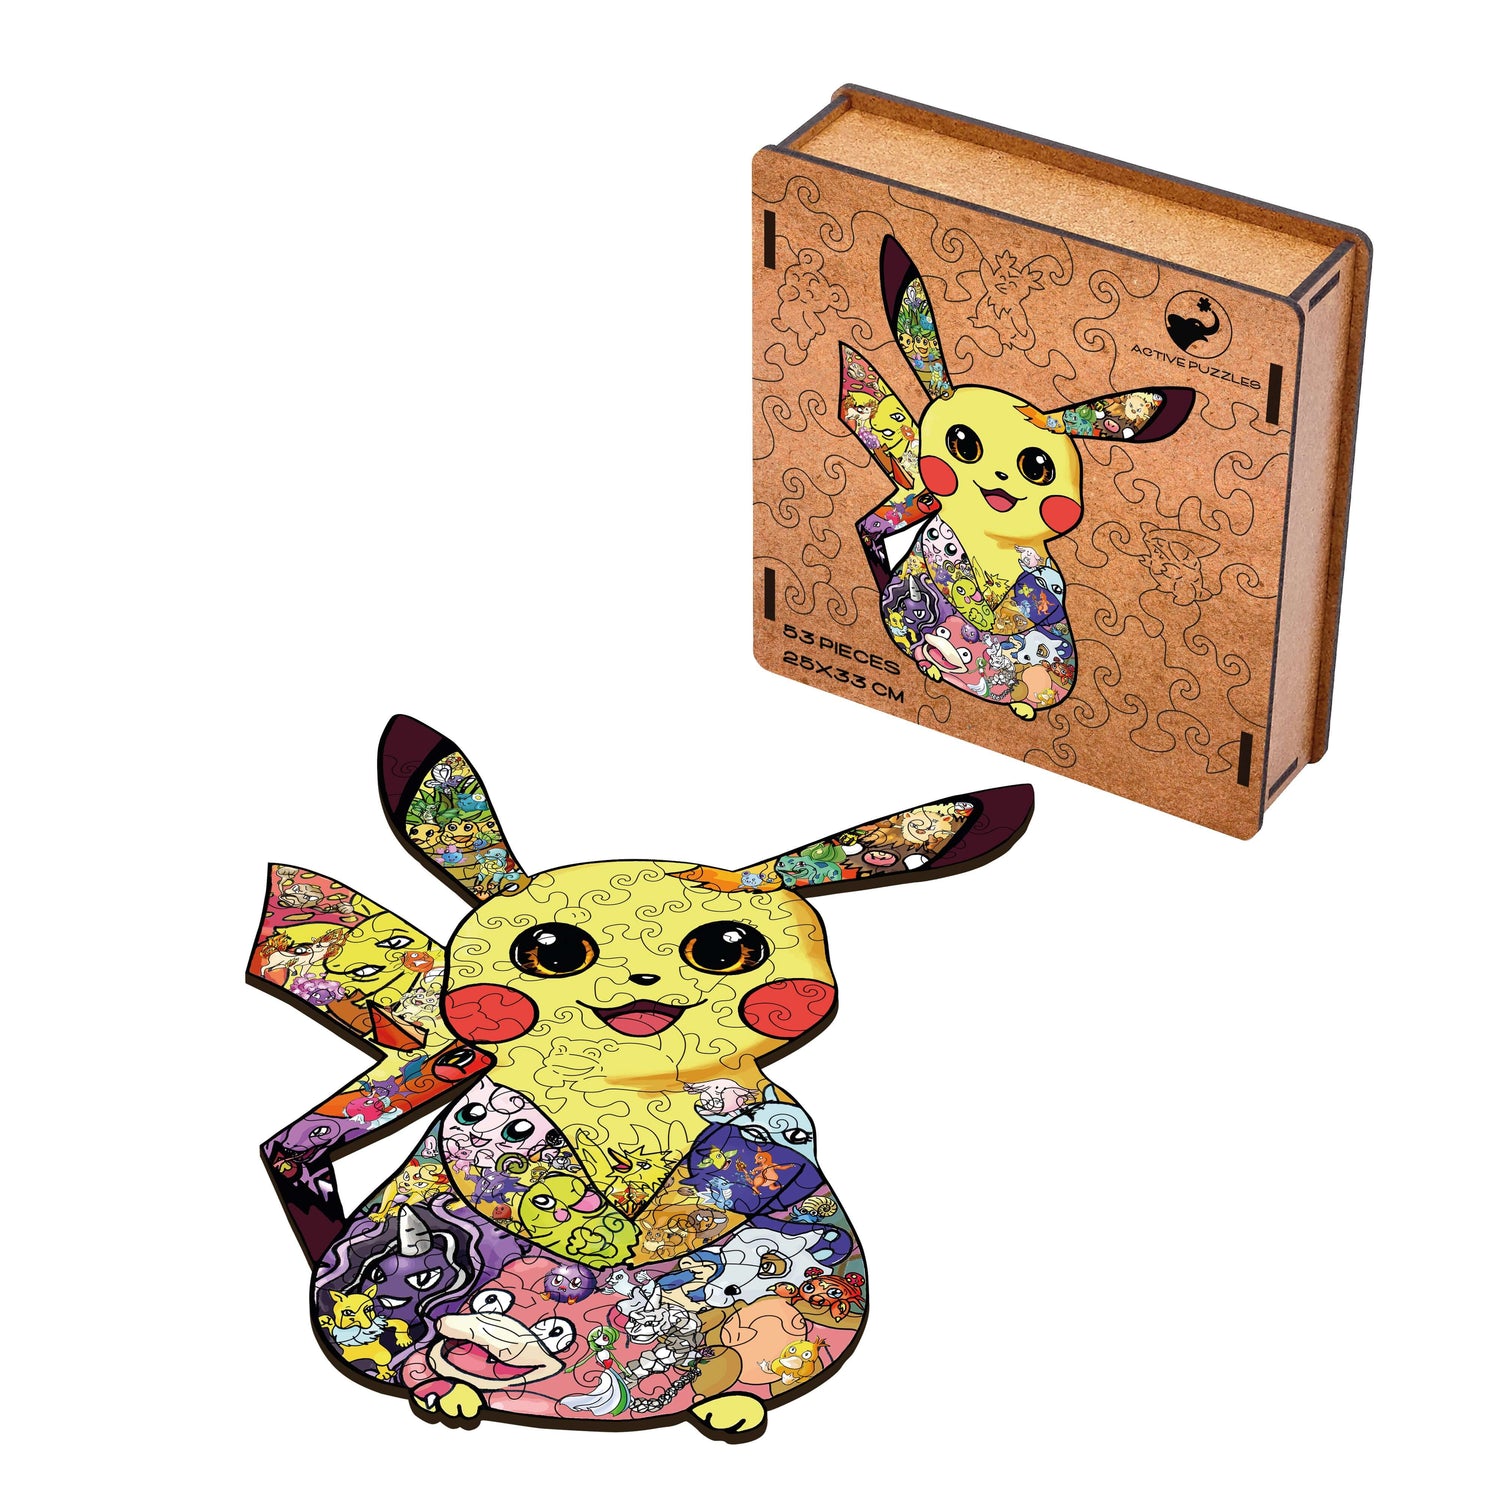 Buy Pikachu Wooden Puzzle | 53 Pieces | Active Puzzles